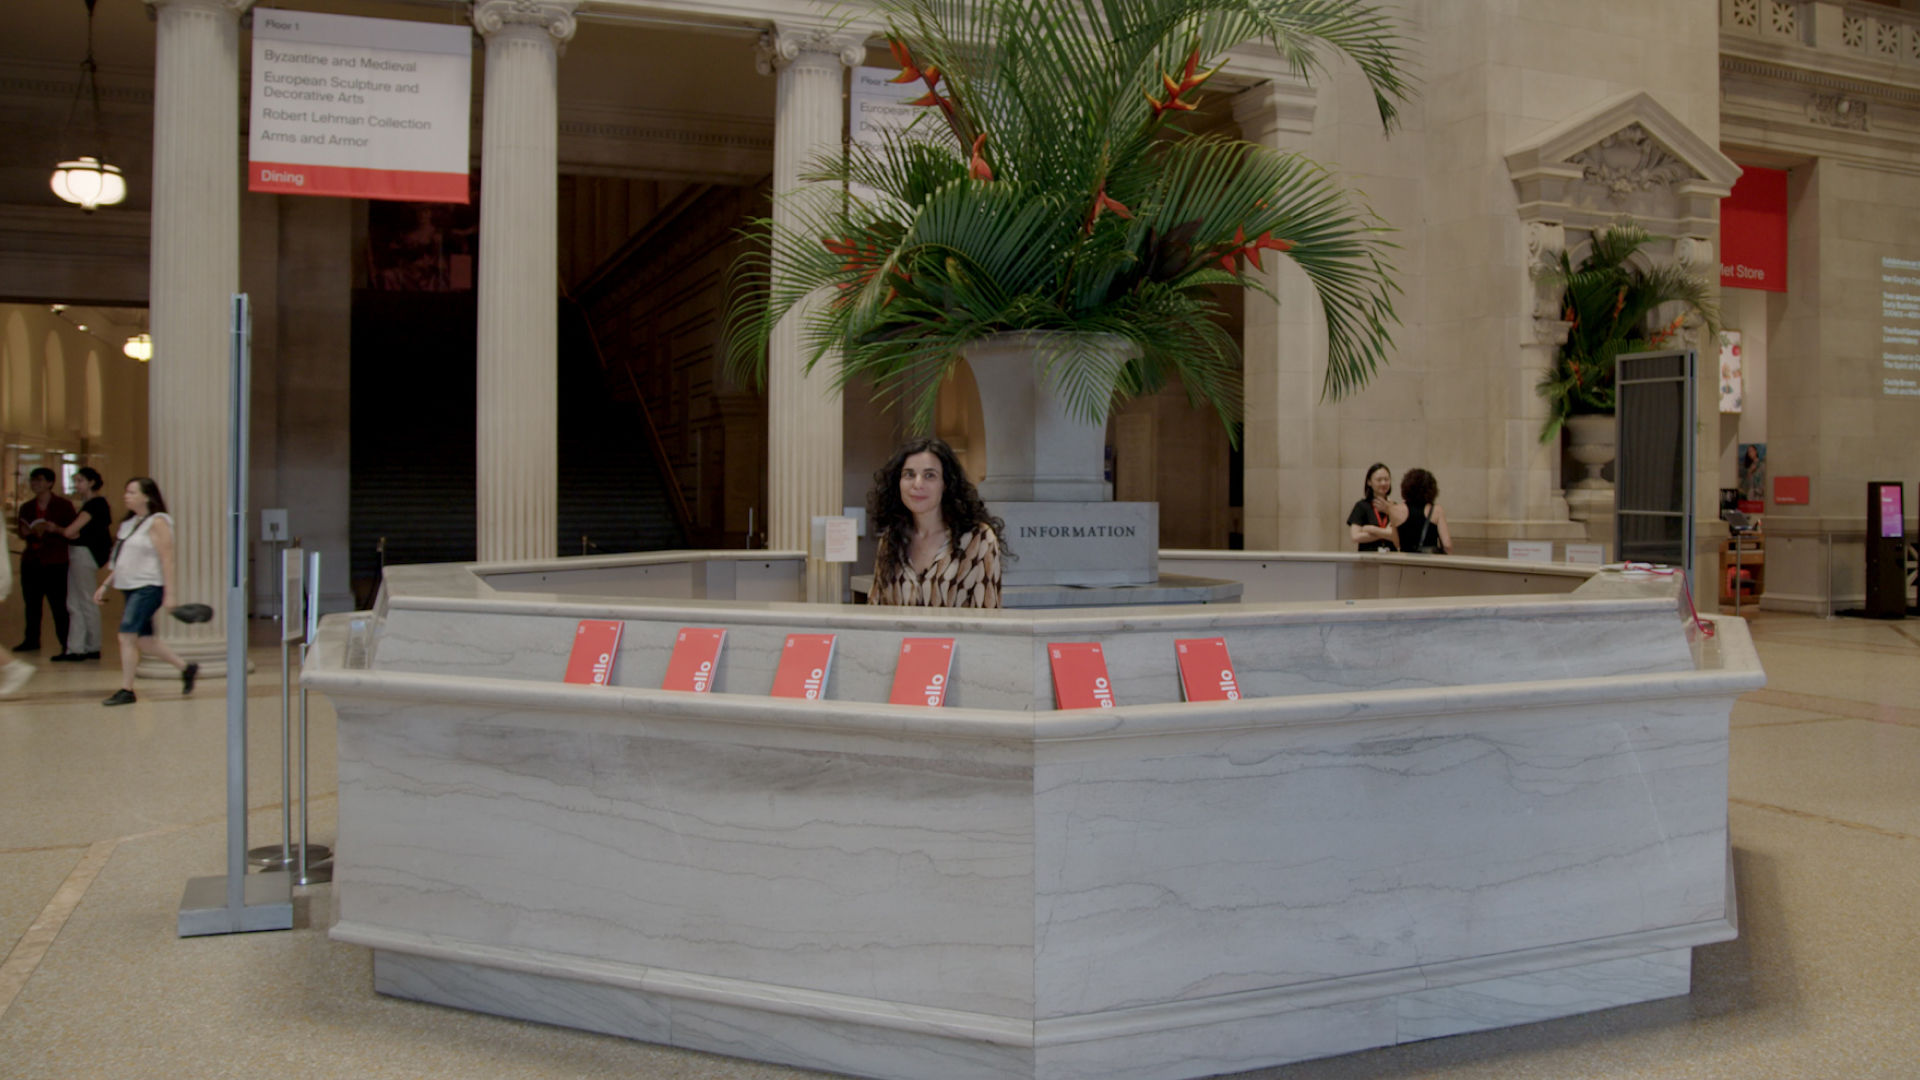 Poet Robyn Schiff stands behind The Met's Information Desk